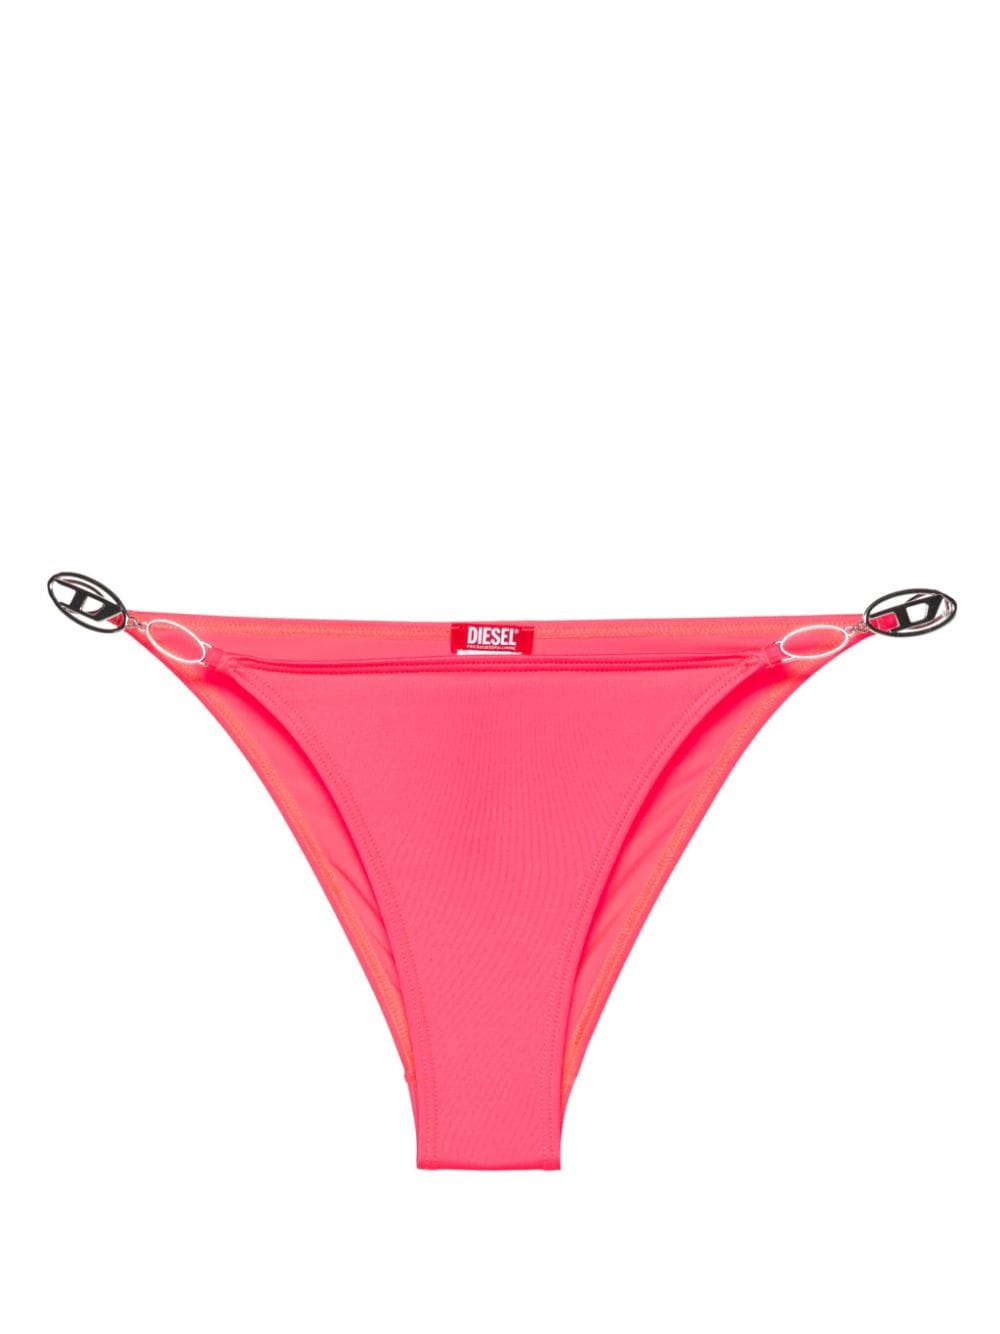 Diesel Bfpn-Irina bikini bottom - Pink von Diesel